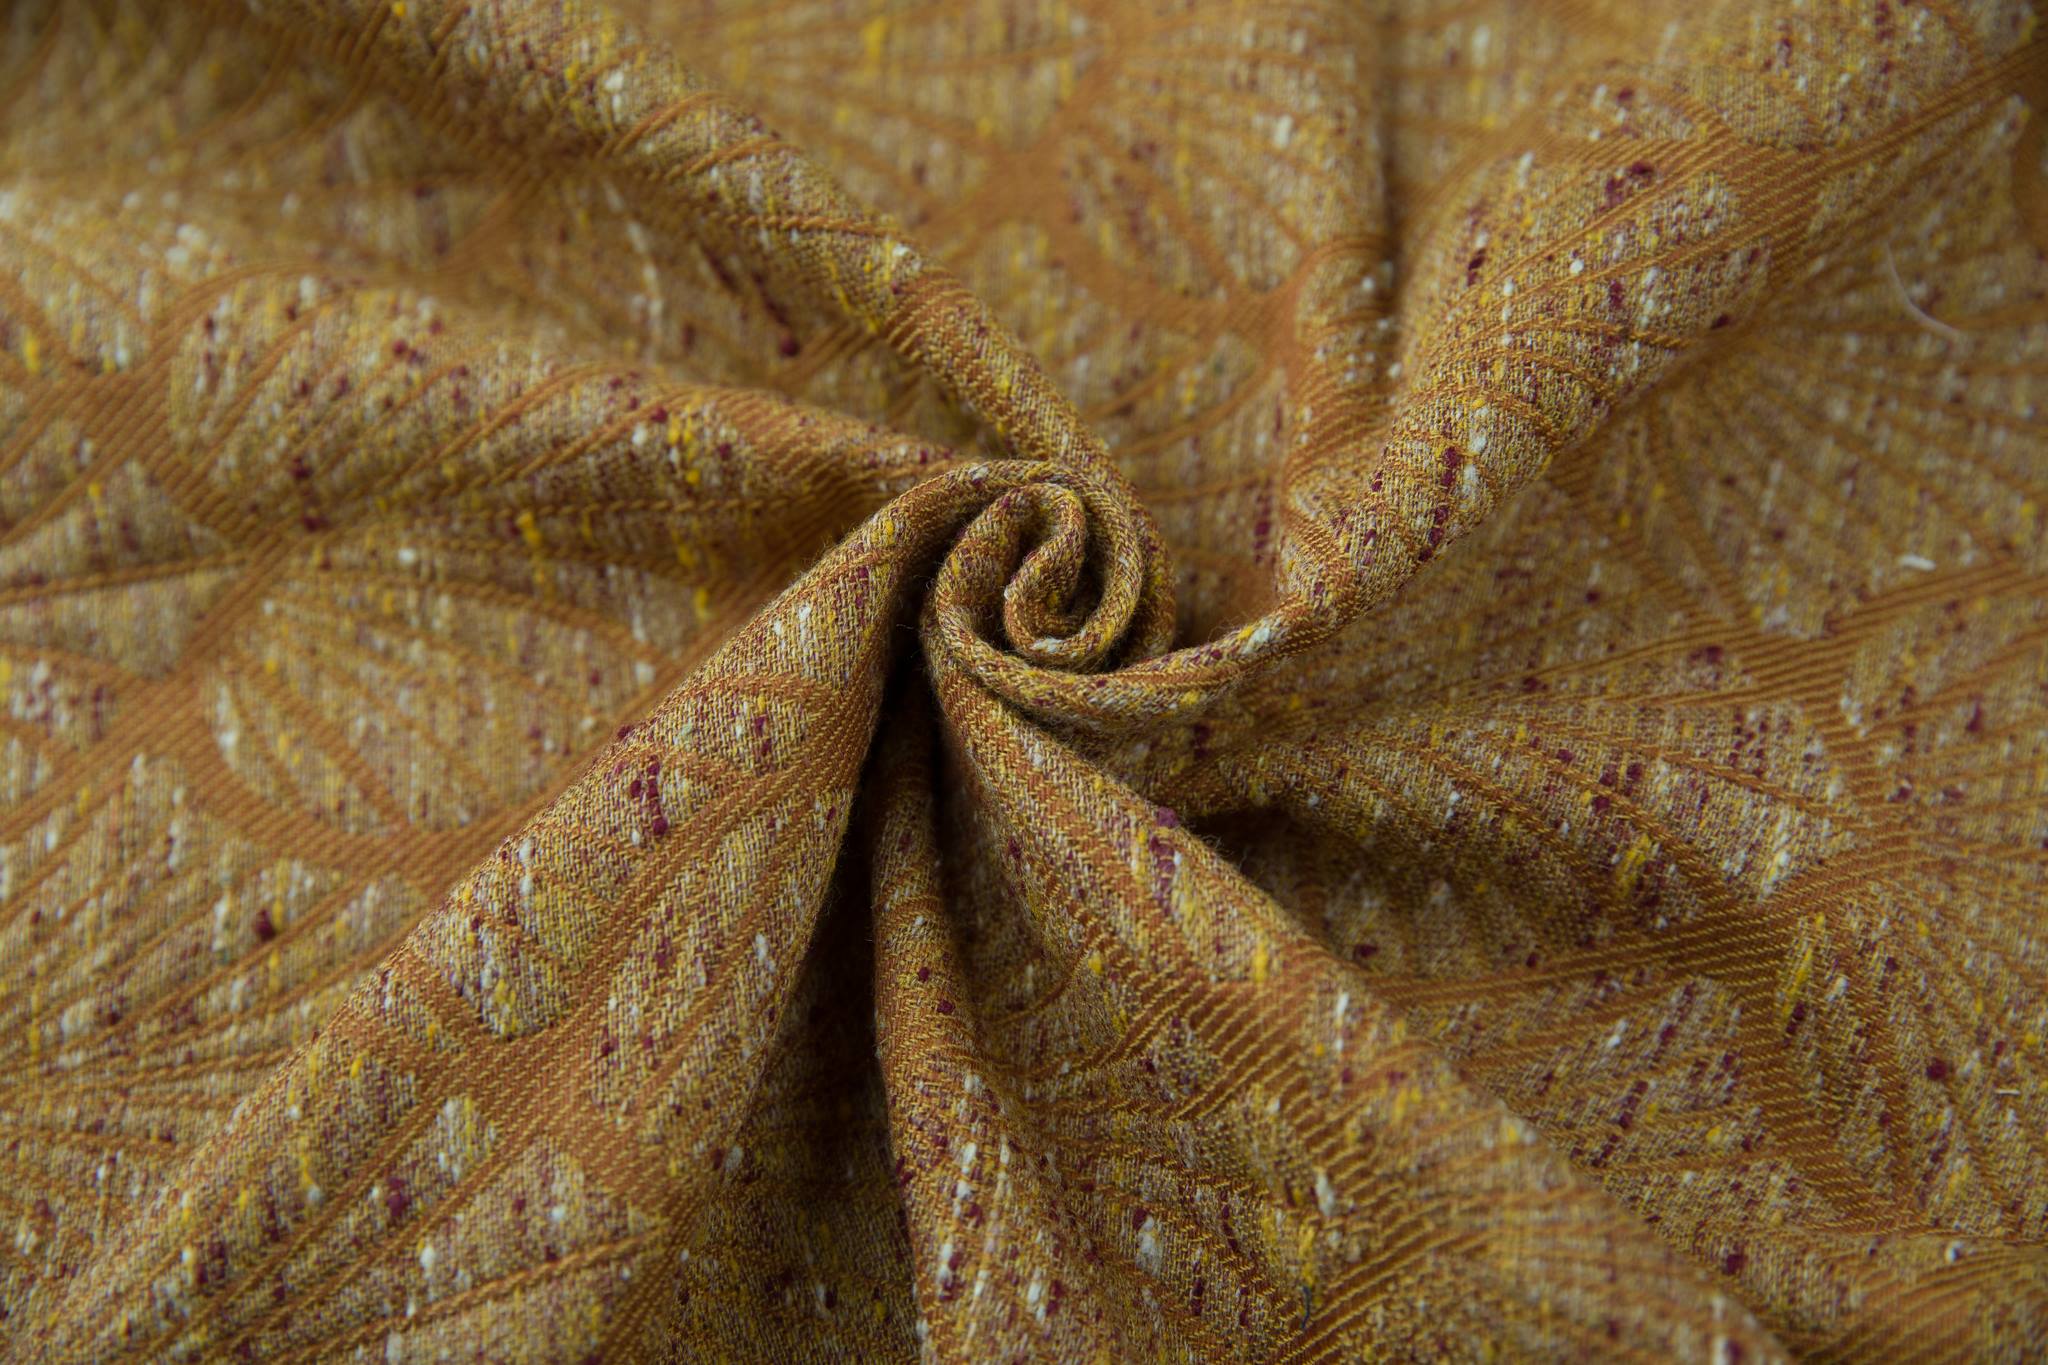 Linuschka Ipomée Ipomee Golden Days Wrap (tussah, wool, mulberry silk, linen) Image